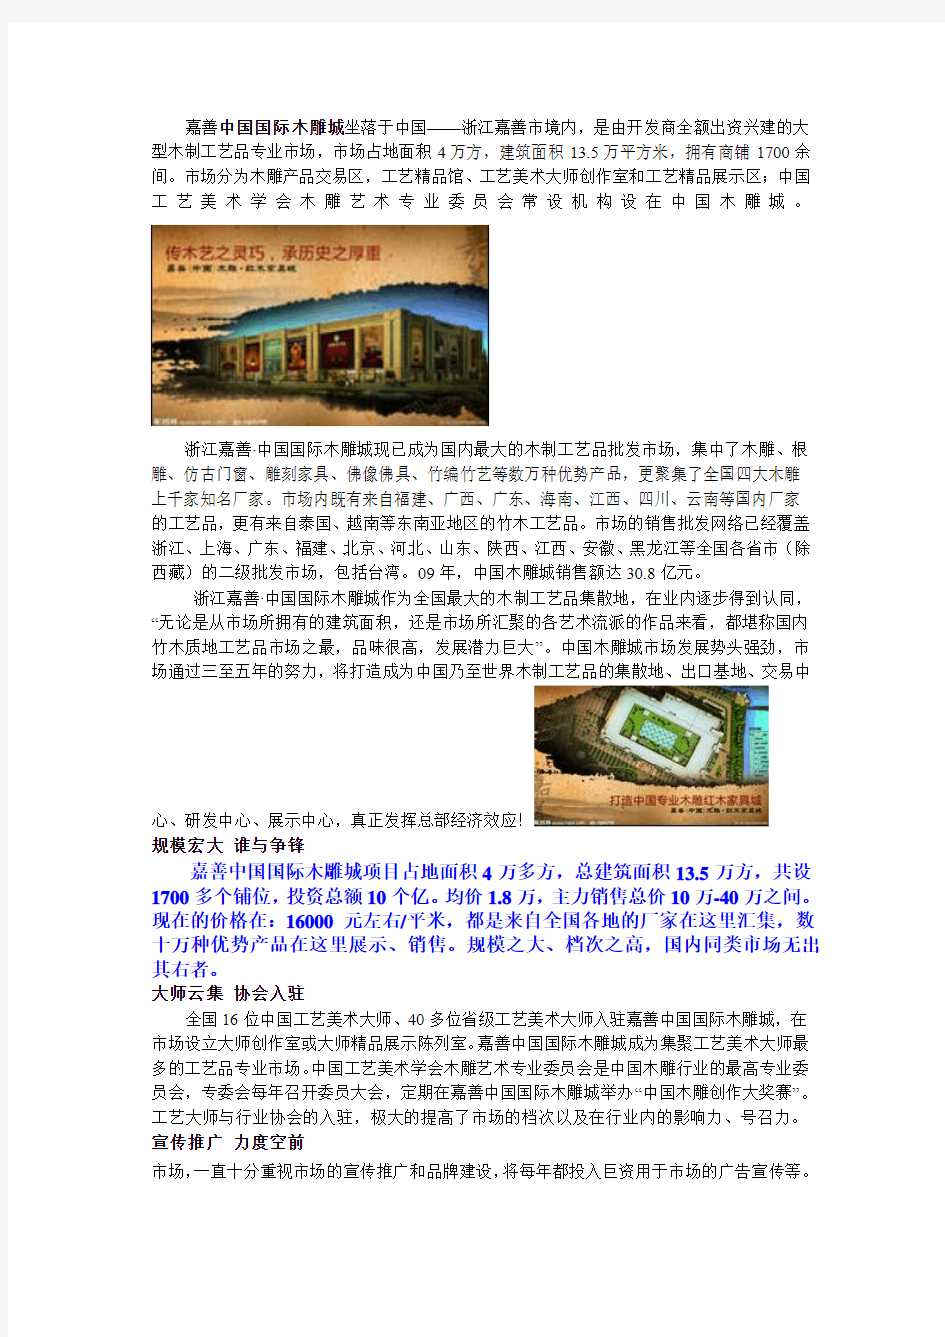 嘉善中国国际木雕城,最大的红木家具市场,总价10万起,全国销售最大市场